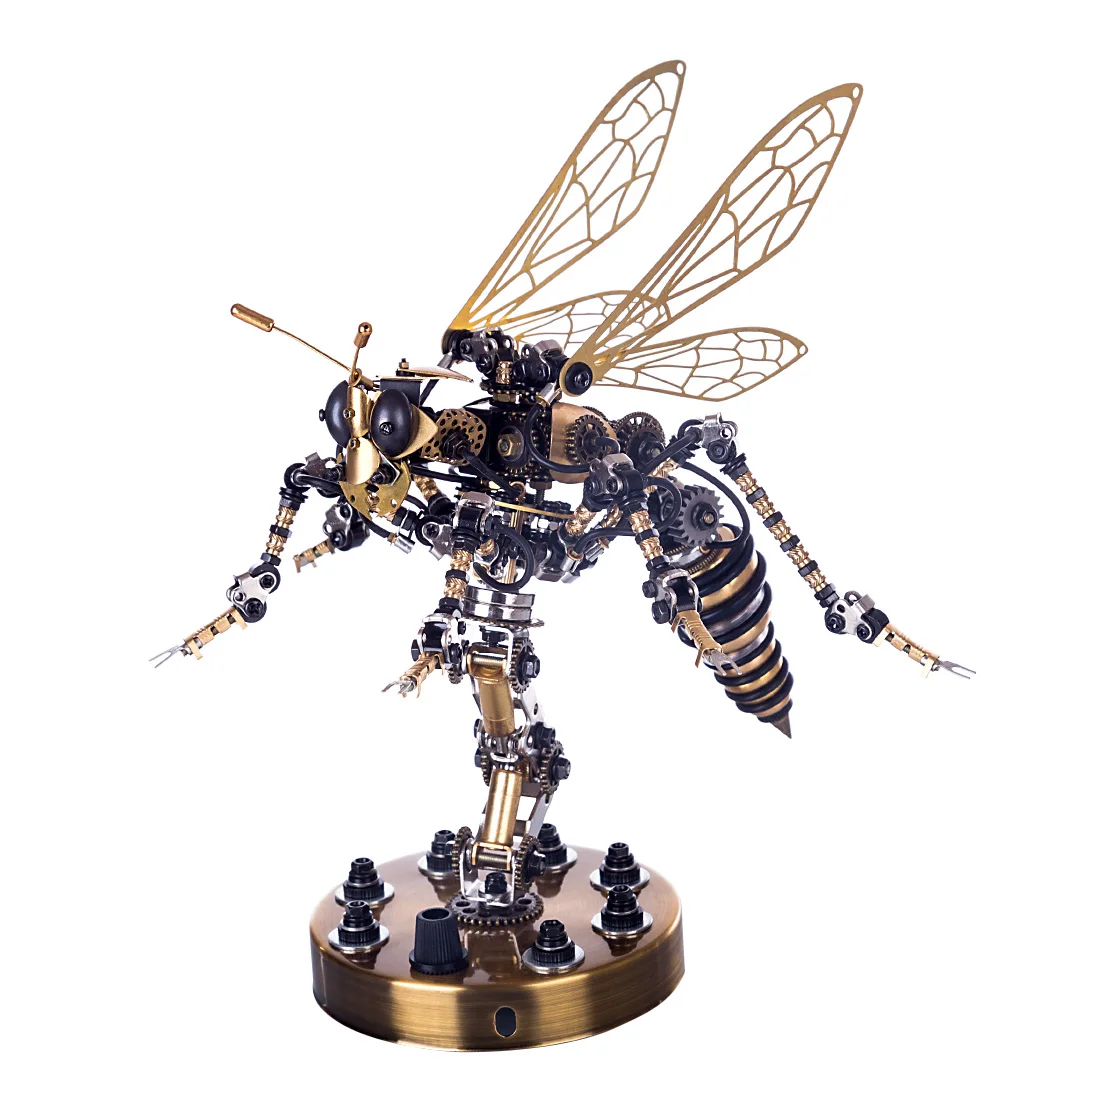 3D Механическая сборка с осами Набор моделей-головоломок насекомых из нержавеющей стали DIY Crafts Строительные модели Игрушки Хобби Подарки